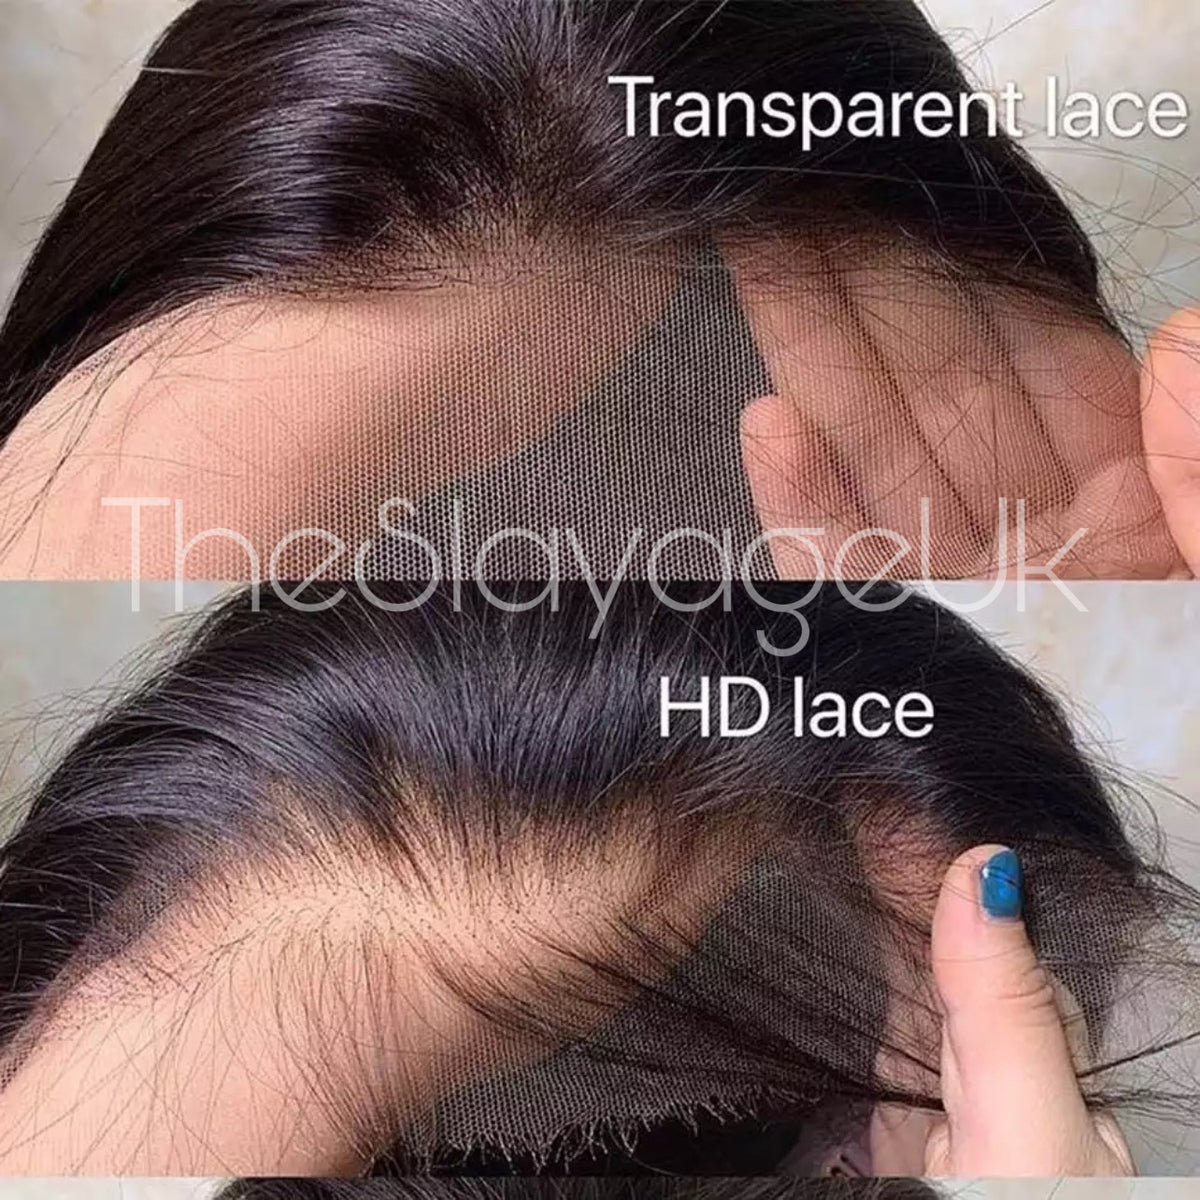 Transparent Lace vs HD Lace 